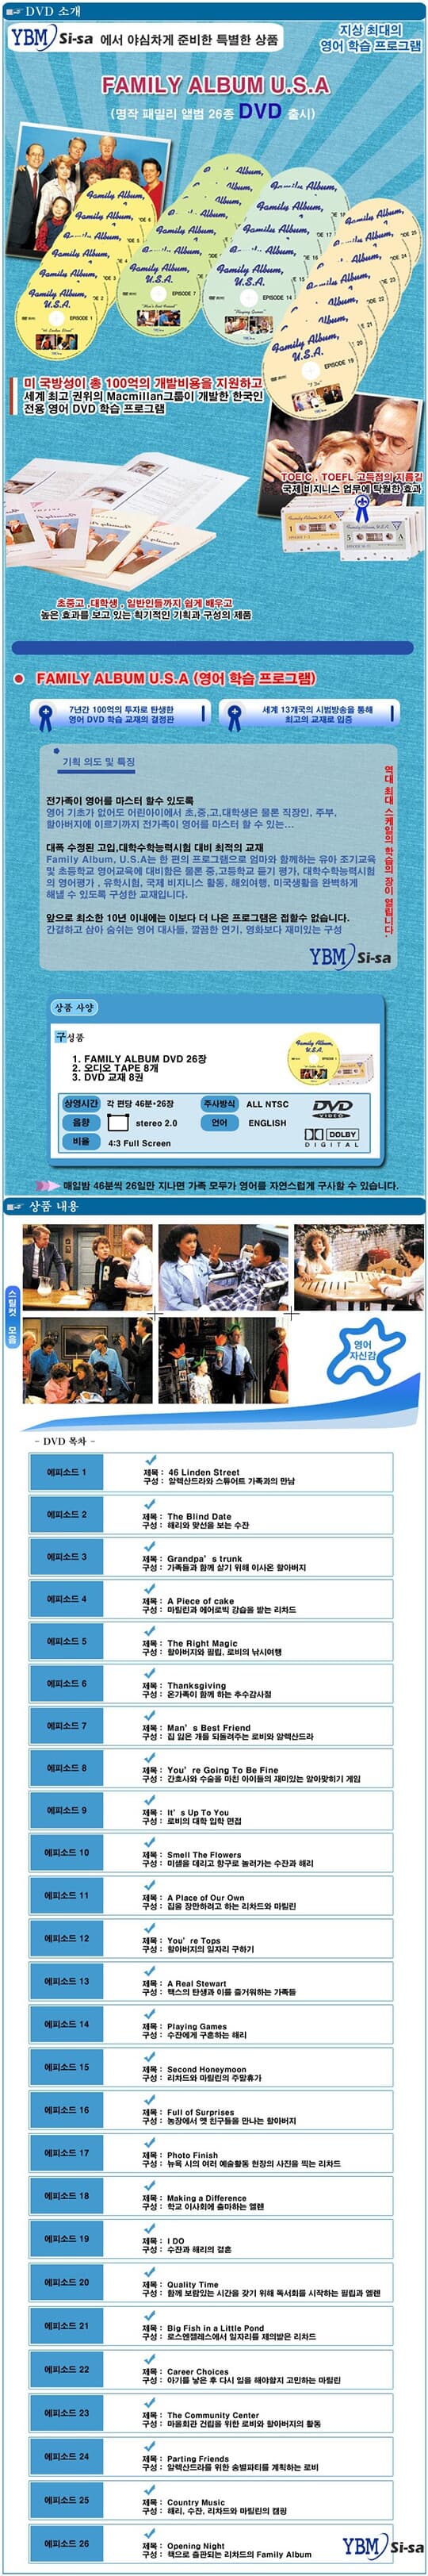 [DVD] 패밀리 앨범 U.S.A 풀세트 : YBM 시사 영어학습프로그램(영어학습프로그램)